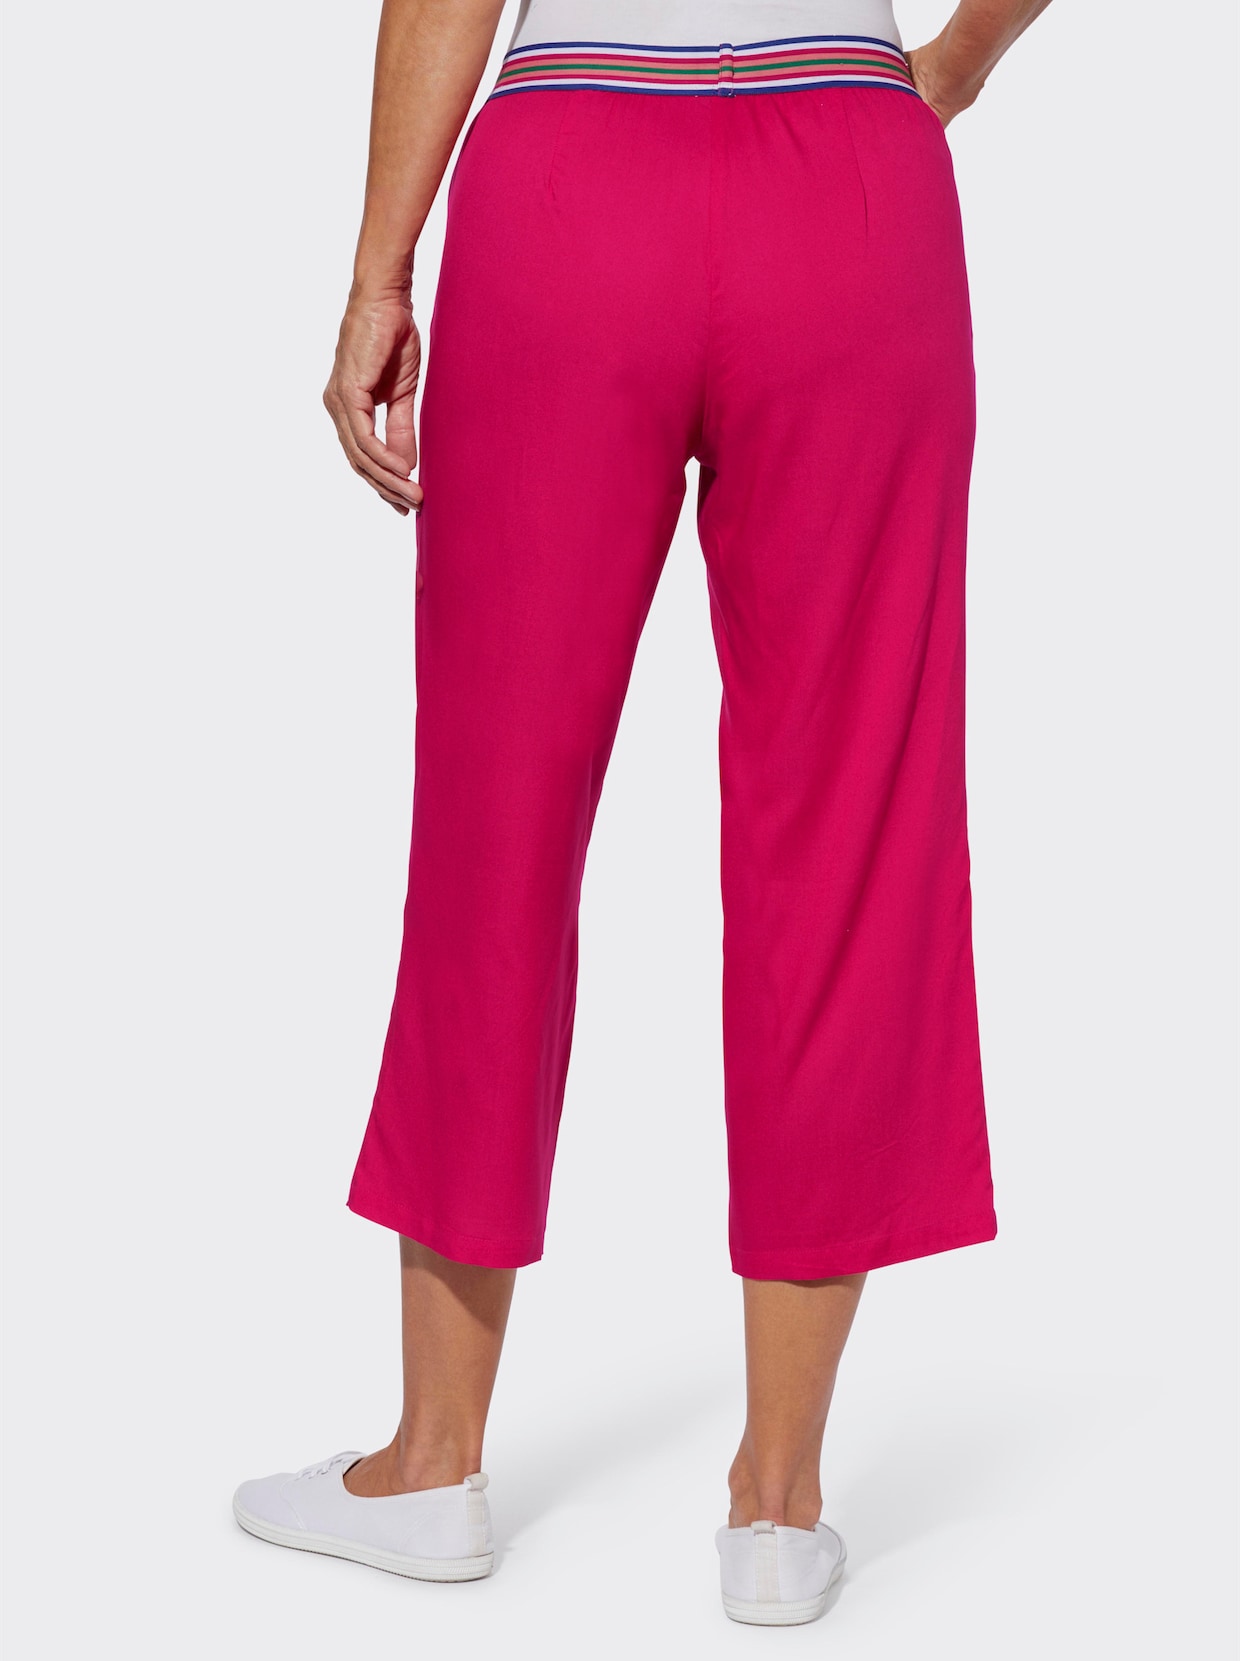 Nohavice na gumu - ružová